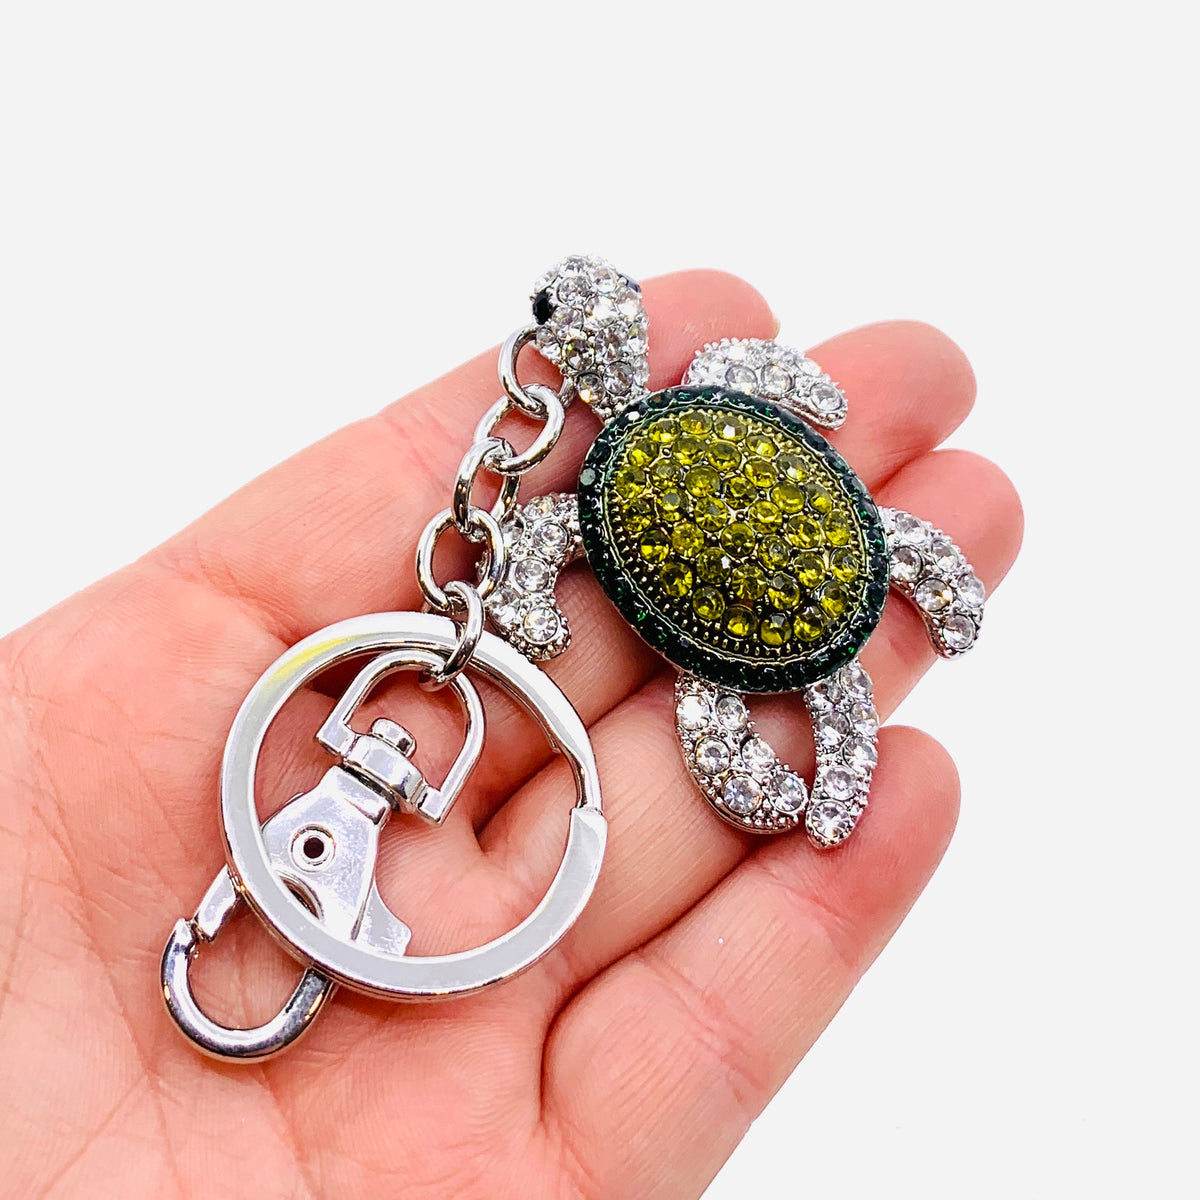 Bejeweled Key Chain 8, Green Turtle